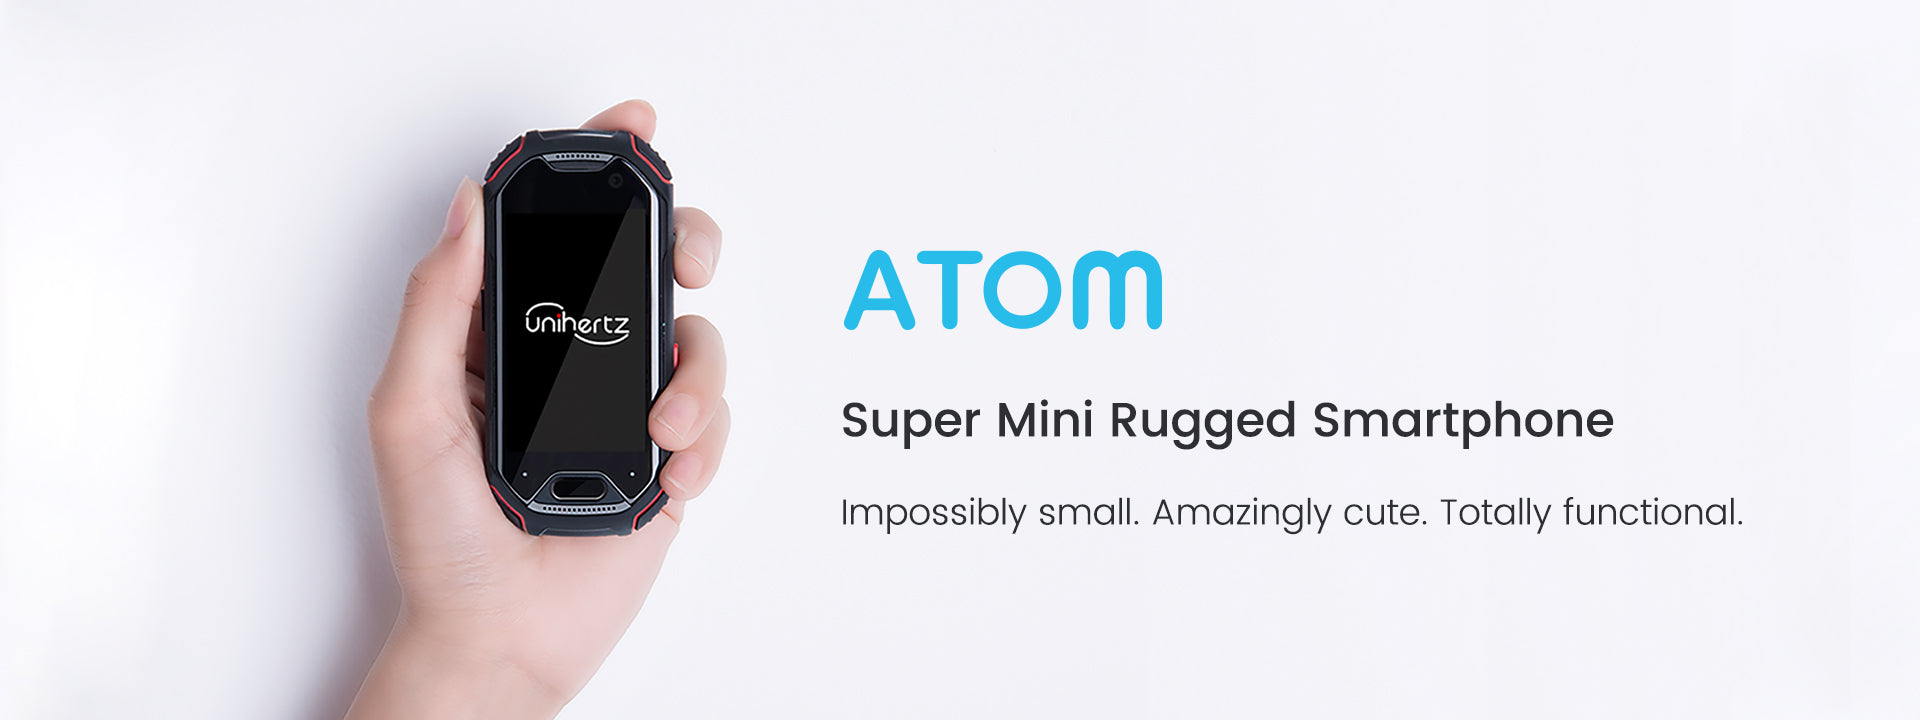 Unihertz Atom - Super Mini Rugged phone